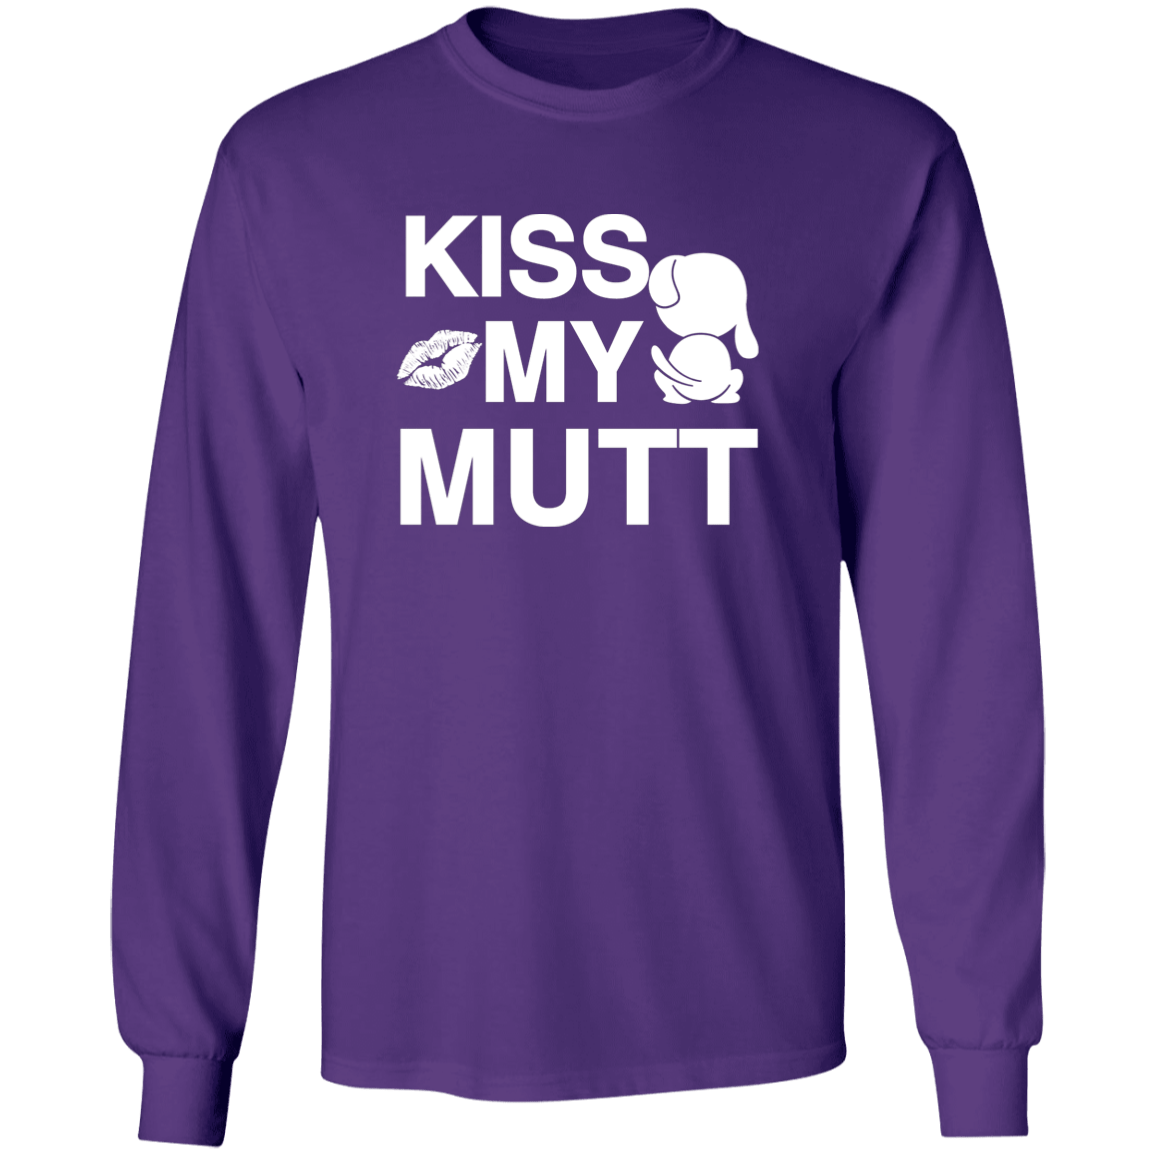 Kiss My Mutt - Long Sleeve T Shirt.